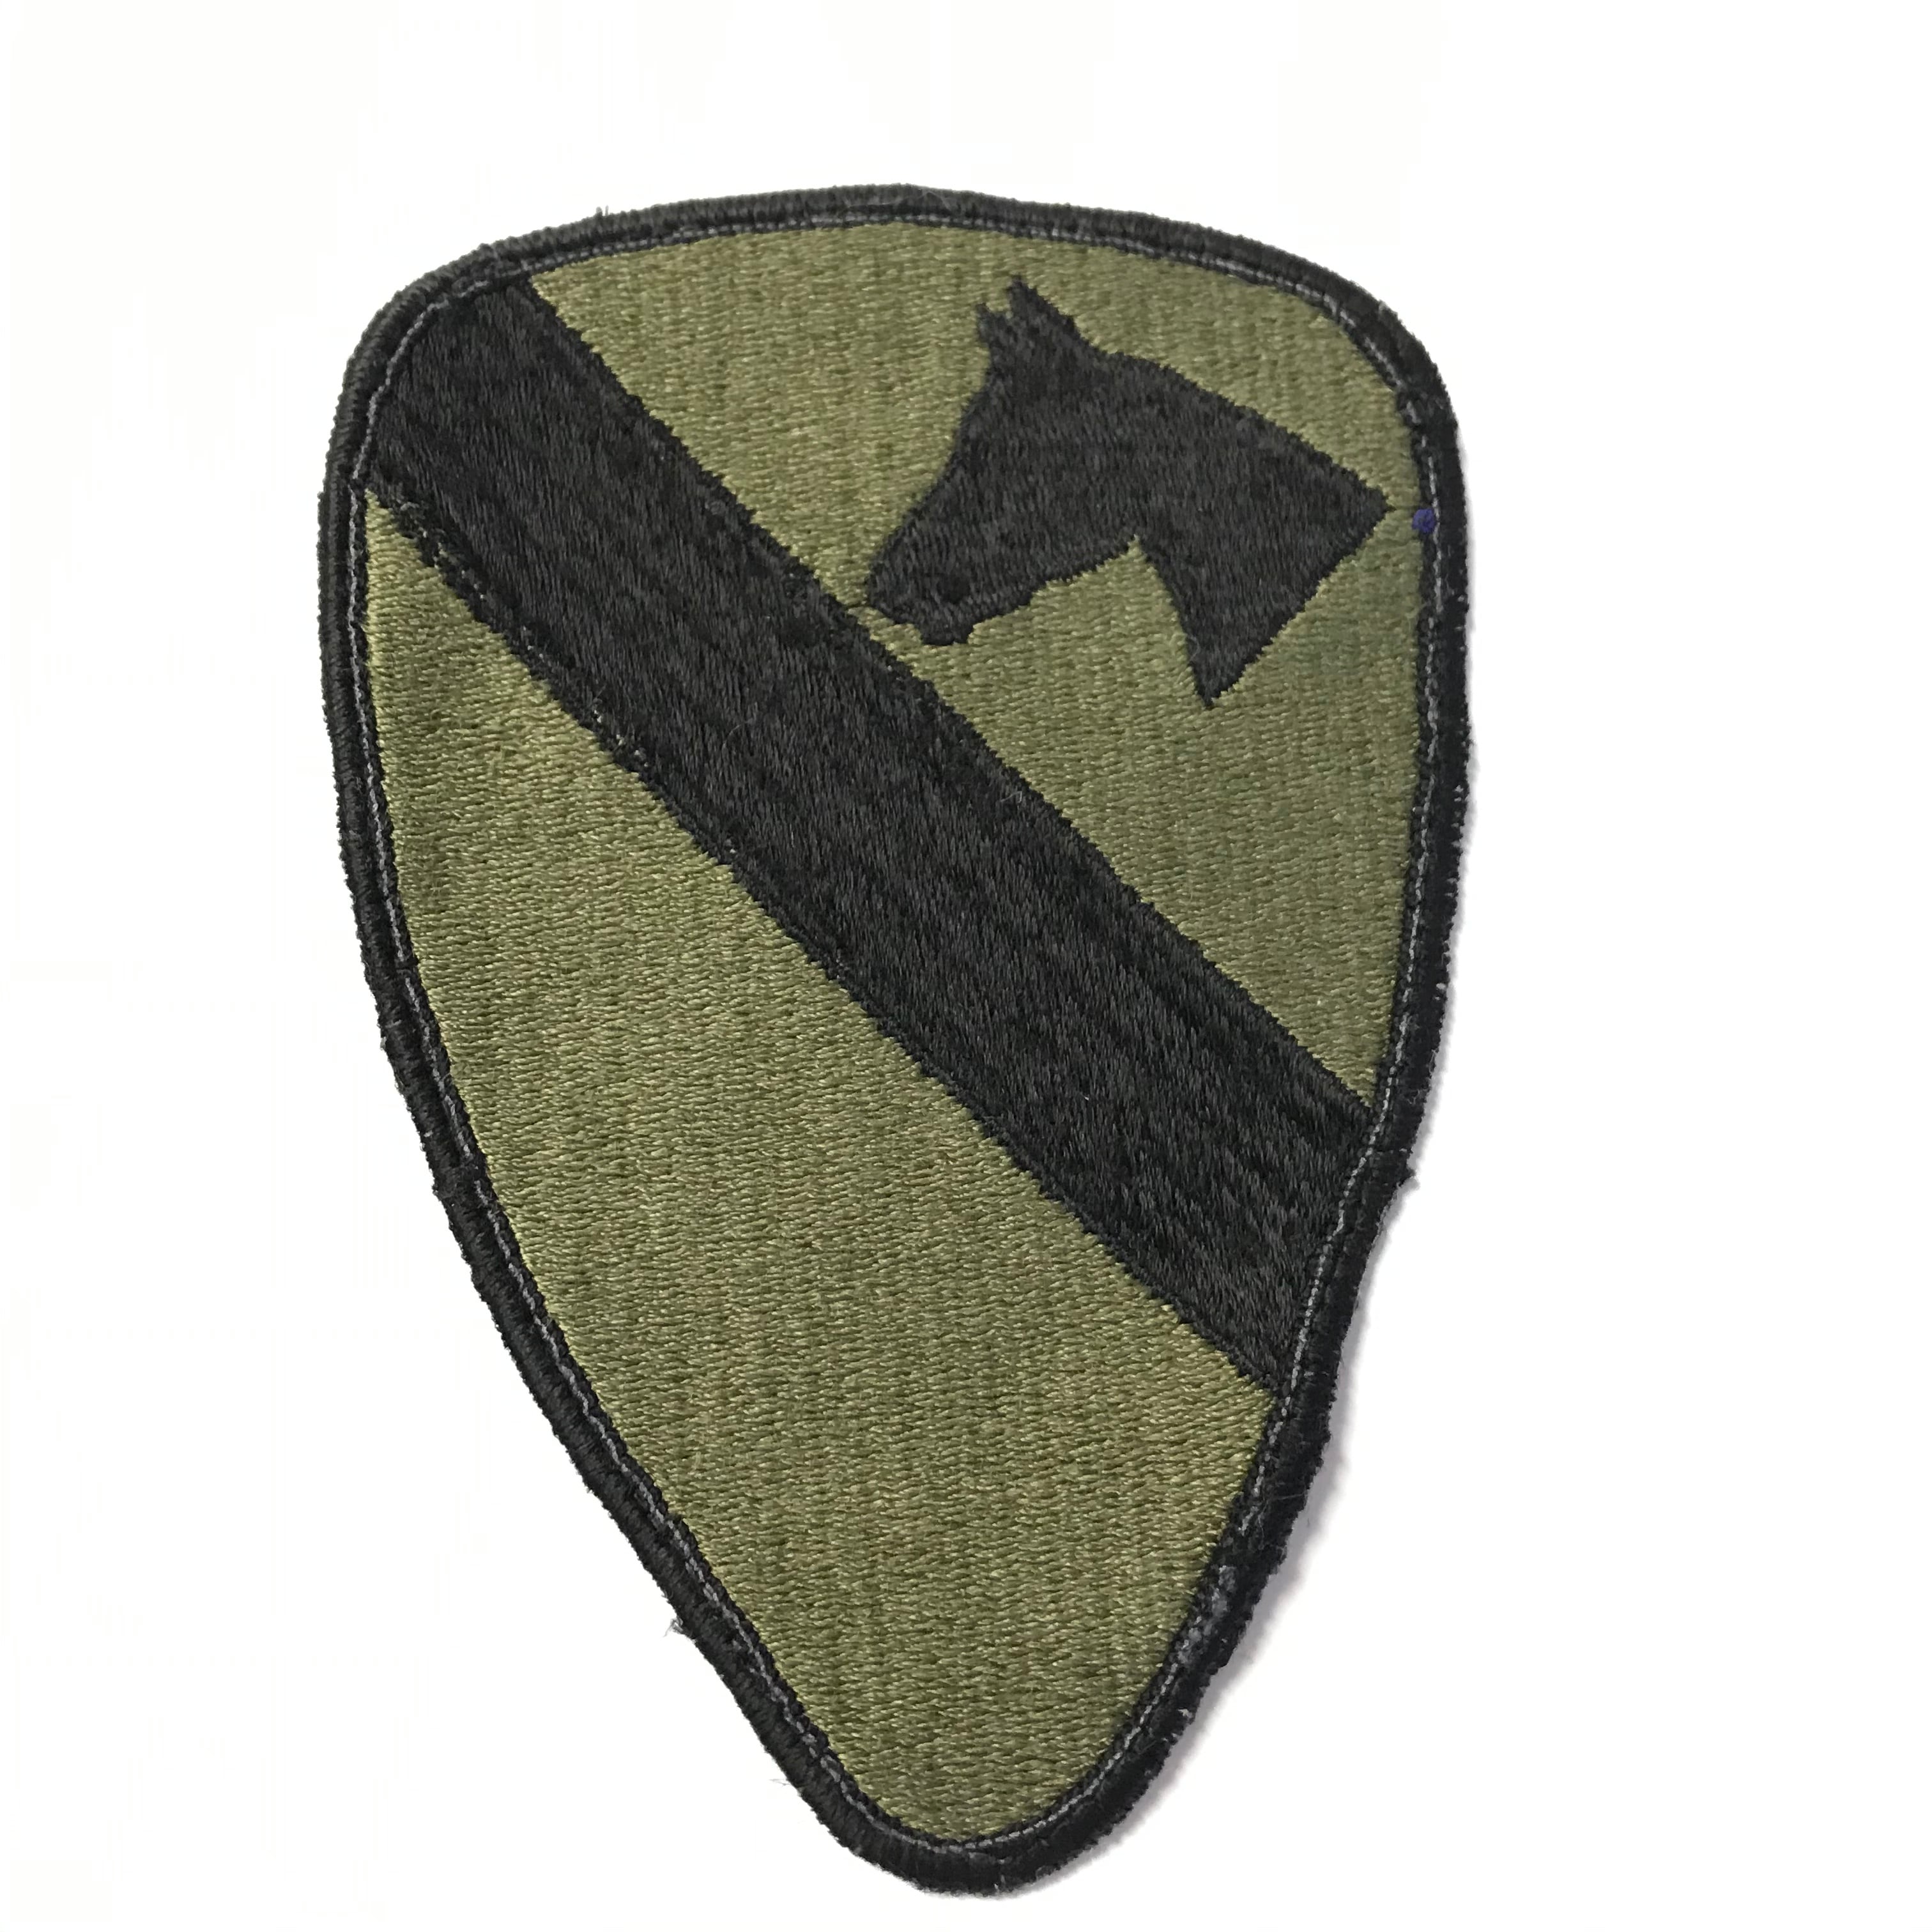 第一騎兵師団 1st Cavalry Division サブデュード パッチ patch ワッペン BaseEXCHANGE